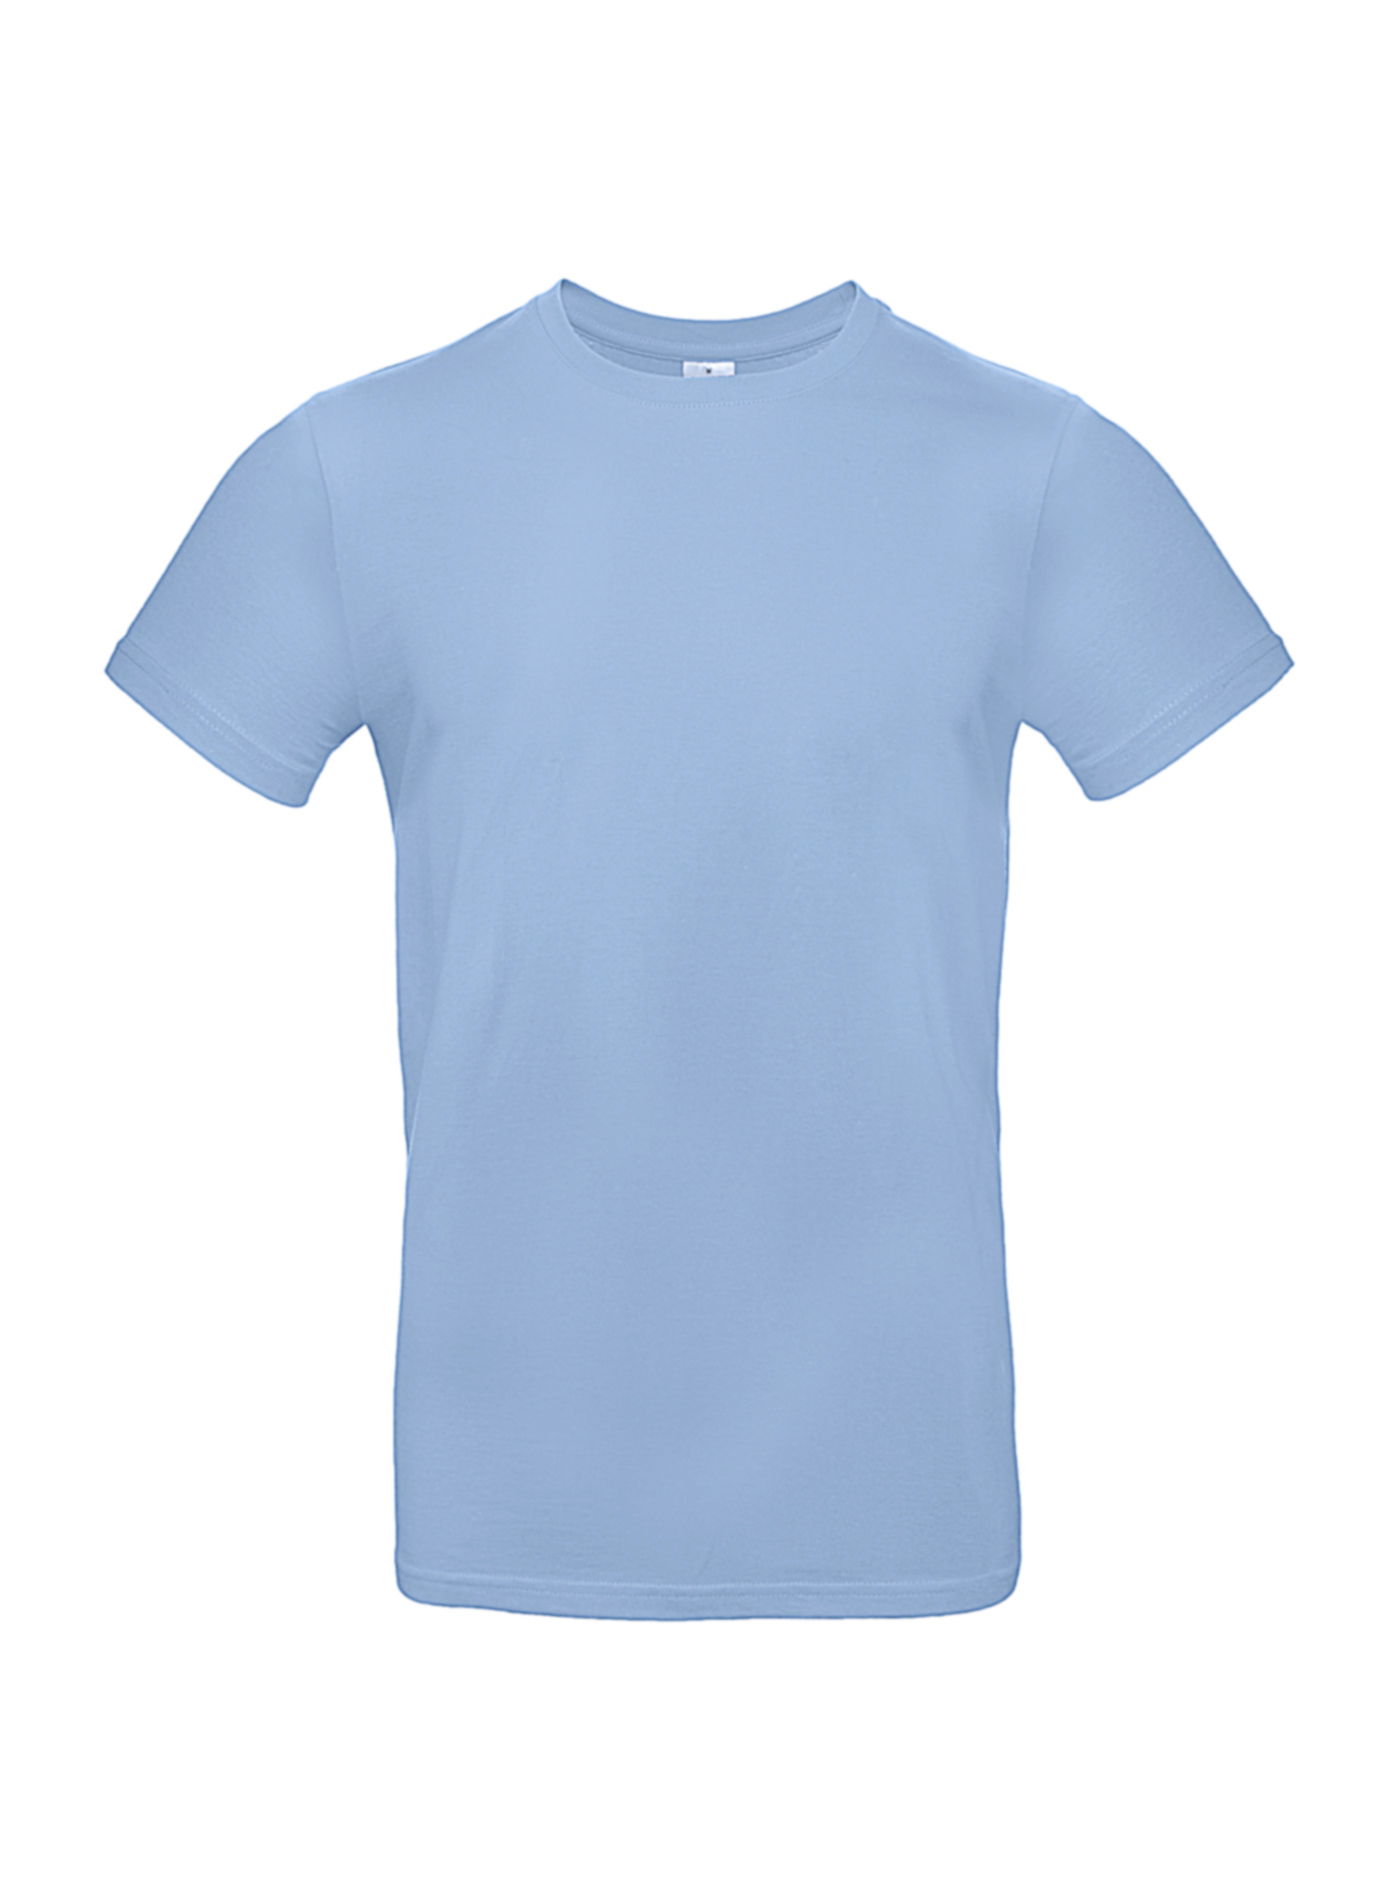 Silnější bavlněné pánské tričko - Blankytně modrá XXL